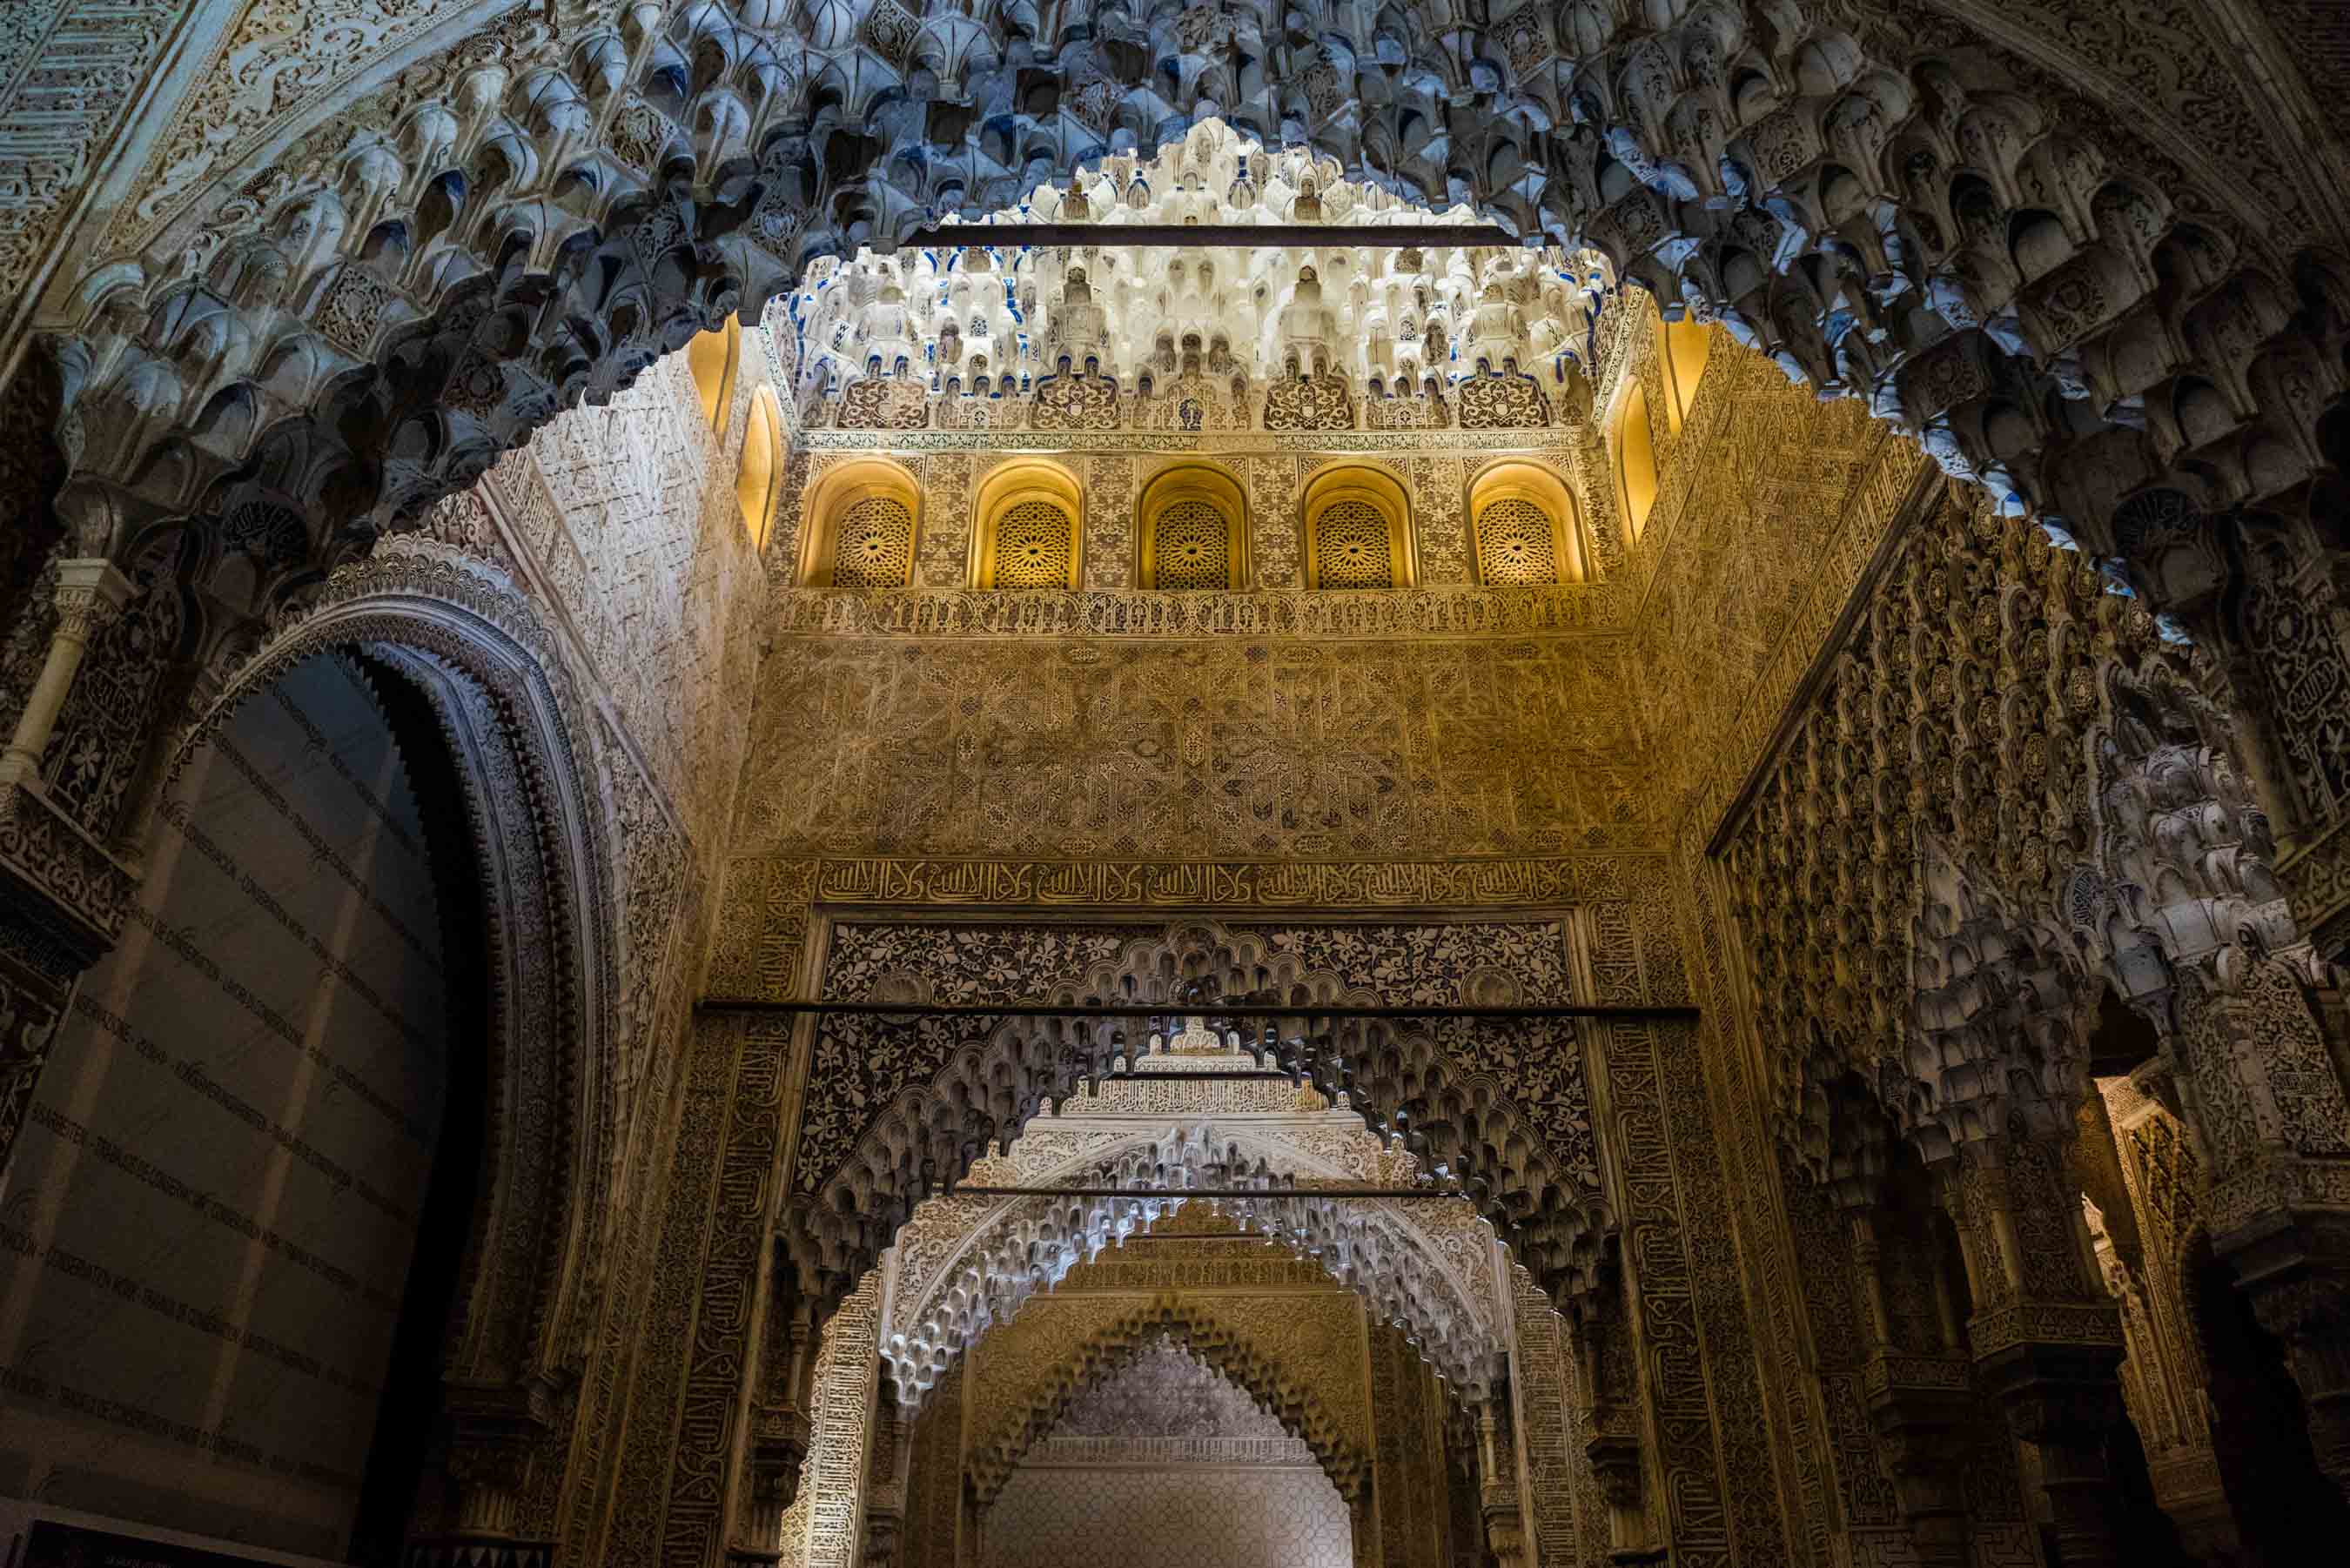 Granada Alhambra - by night details 5